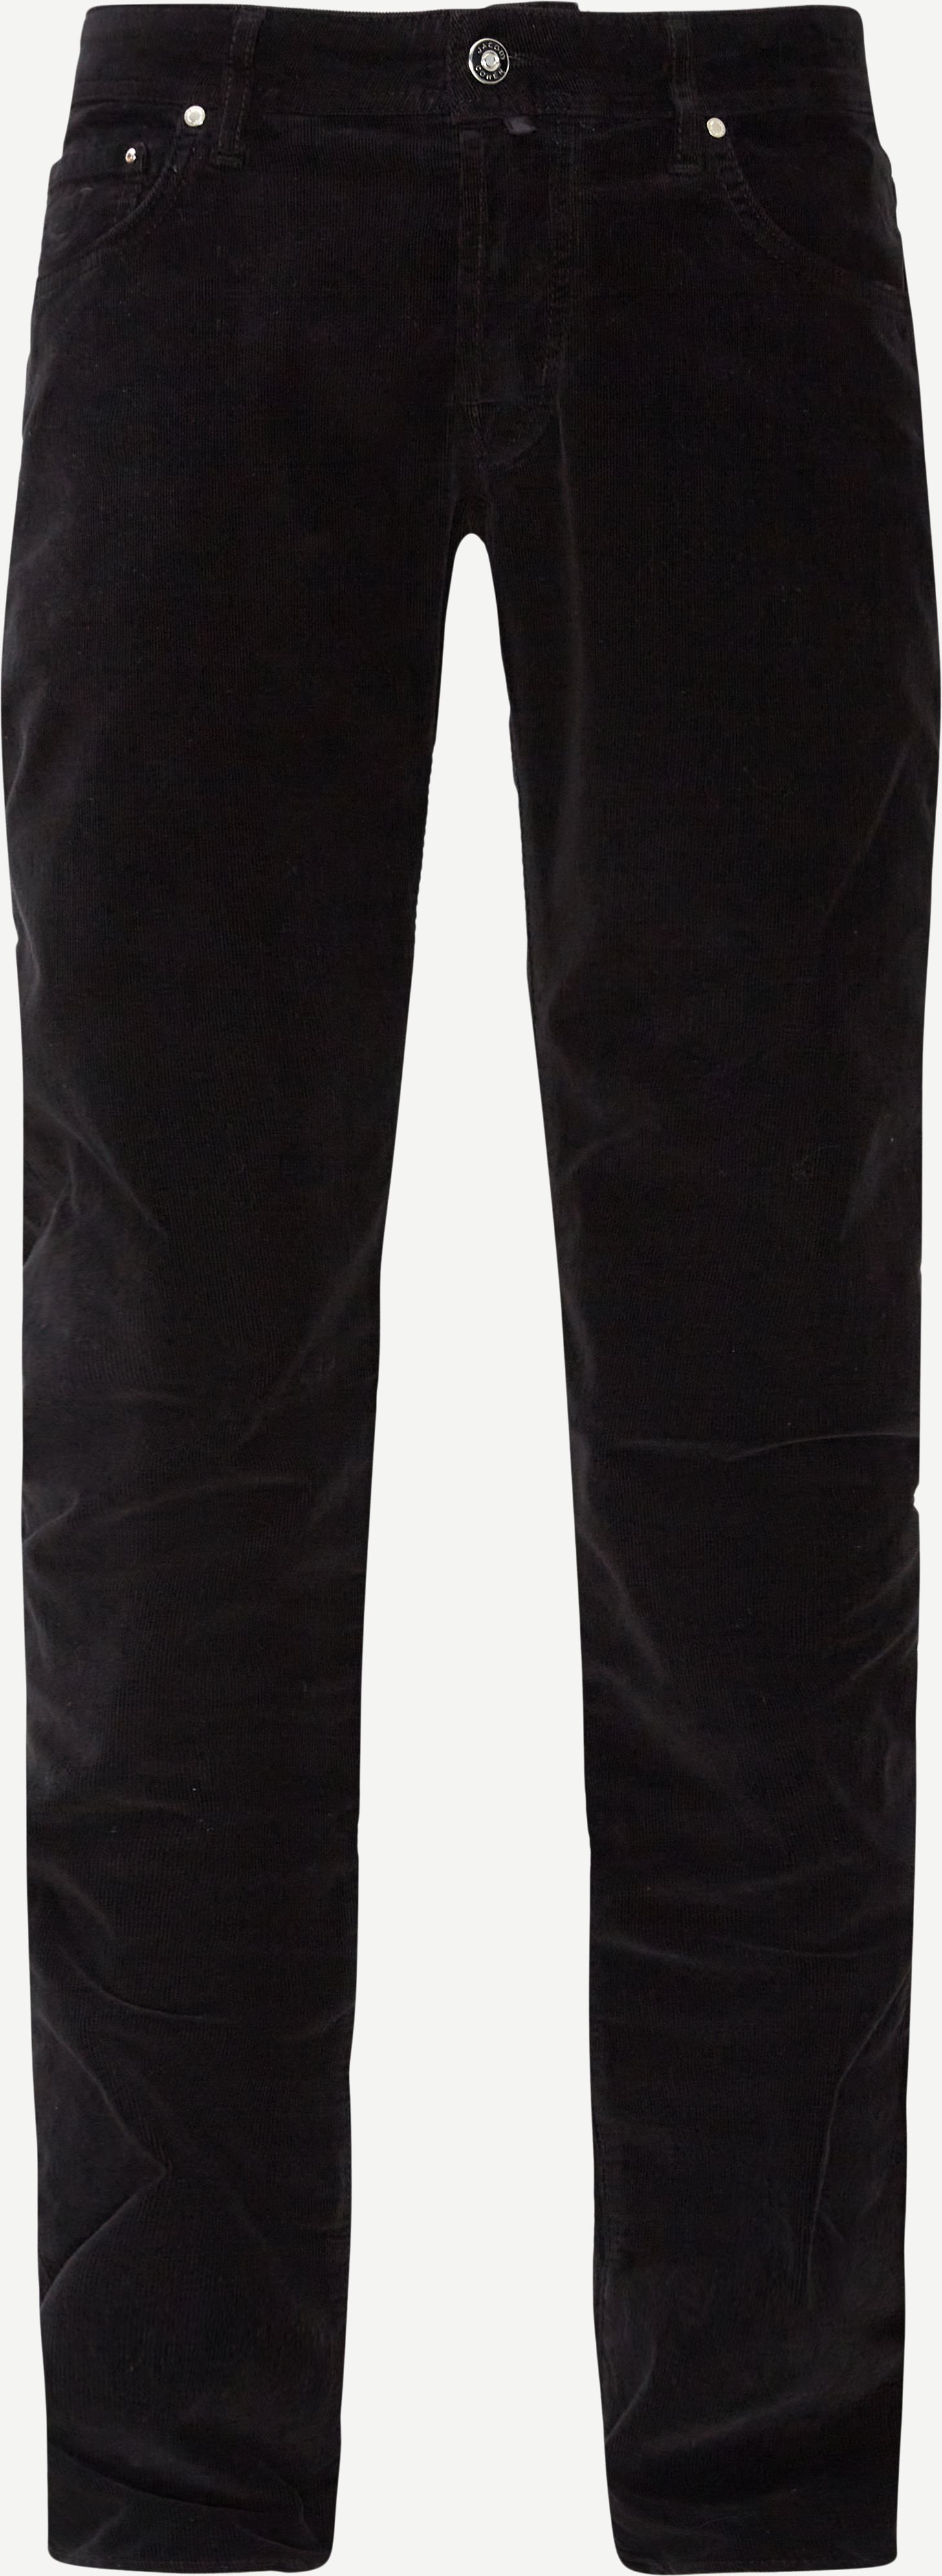 Jeans - Slim fit - Black